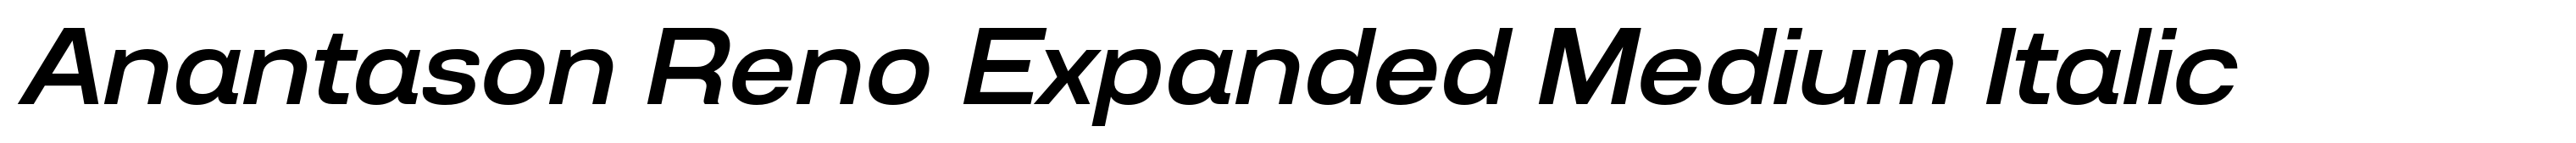 Anantason Reno Expanded Medium Italic